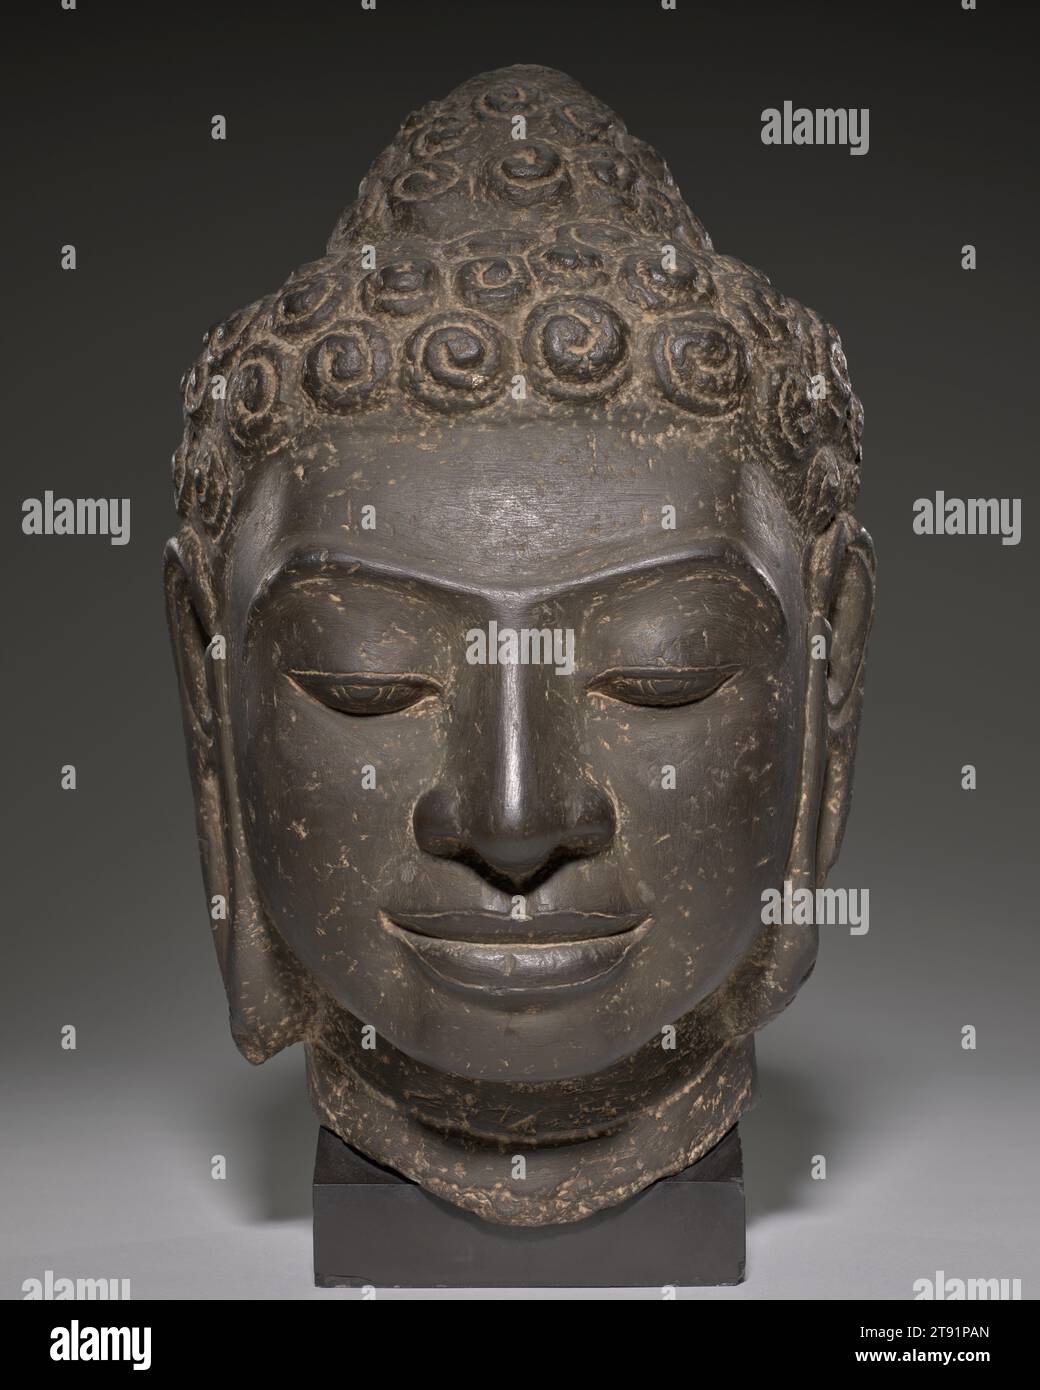 Buddha Head, 8. Jahrhundert, 1/2 x 8 Zoll (26,67 x 20,32 cm), Kalkstein, Kambodscha oder Thailand, Mon-Dvaravati Style, dieser Buddha demonstriert eine kritische Innovation der südostasiatischen Skulptur: Die frühe Übersetzung etablierter indischer Prototypen in deutlich lokale Ausdrücke. Der Bildhauer fängt die ruhige Glückseligkeit des Erleuchteten vollständig ein, während er subtil die Gesichtszüge der indigenen Bevölkerung einbezieht. In ähnlicher Weise übertrieben Künstler der Mon-Dvaravati-Zeit die Schneckenschalenlocken Buddhas, ein Attribut, das in indischen ästhetischen Abhandlungen kodifiziert ist Stockfoto